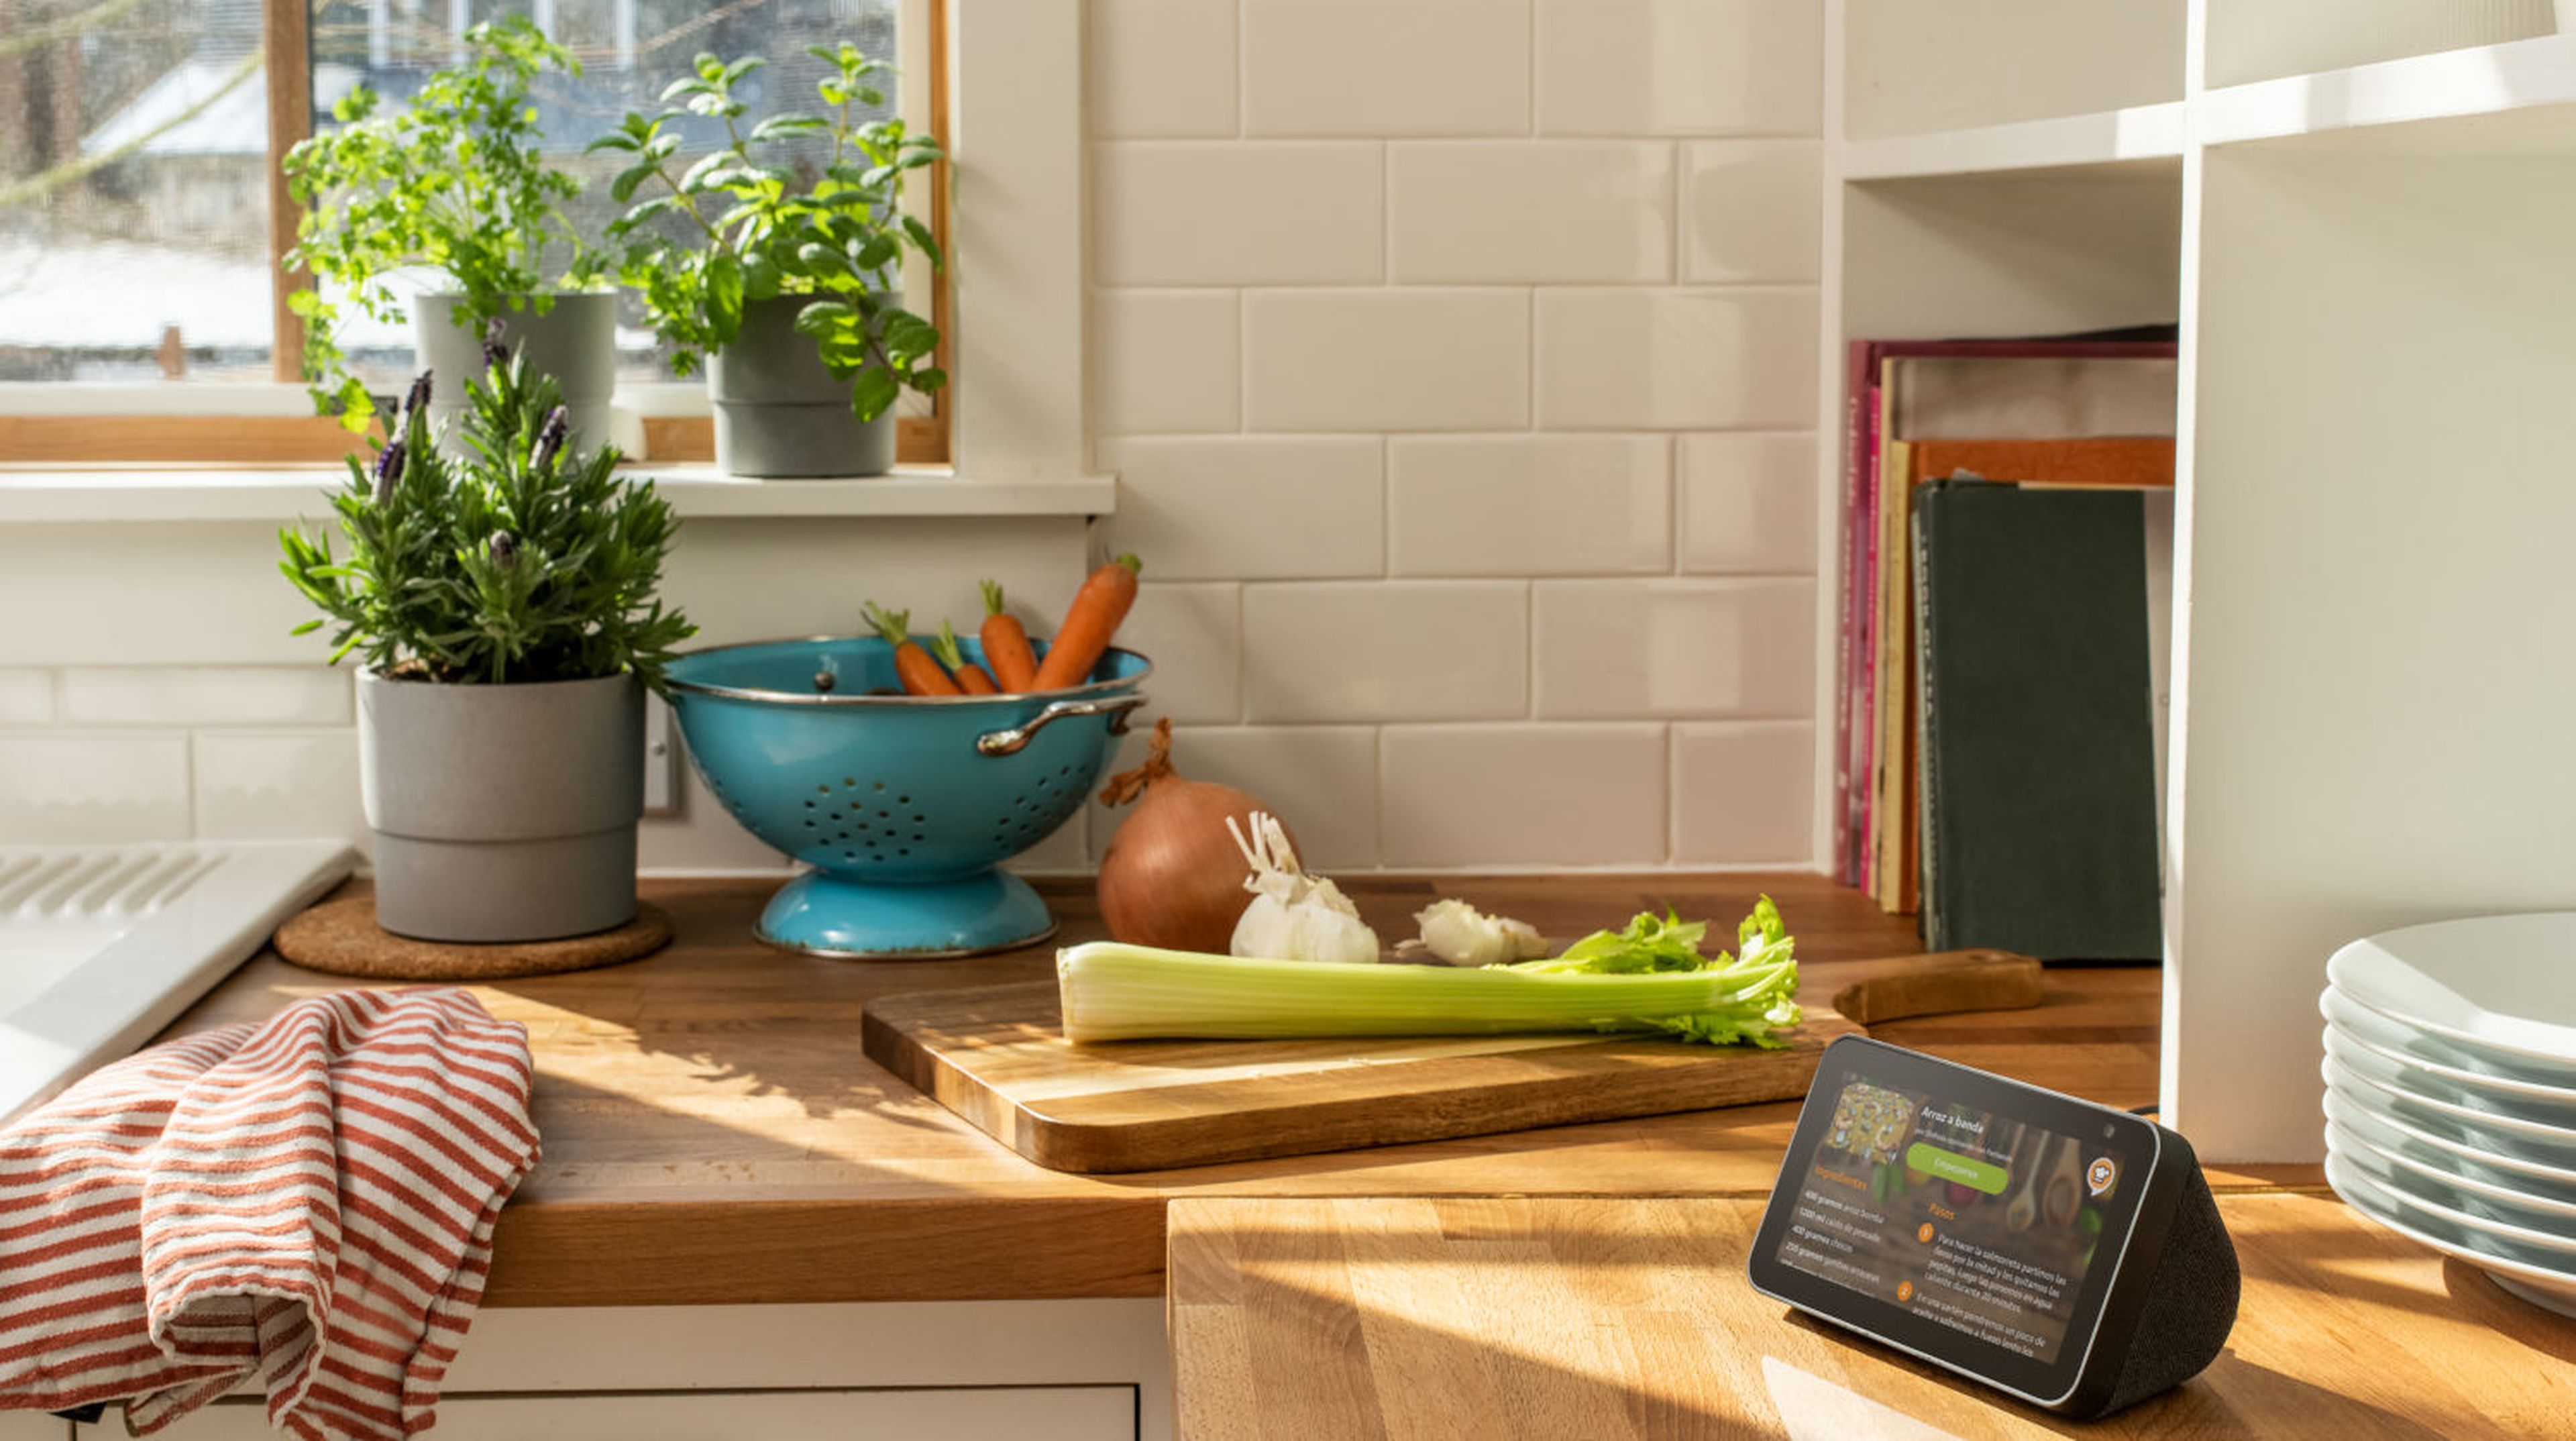 ⚡ Accesorios (gadgets) de bajo consumo: Transforma tu cocina